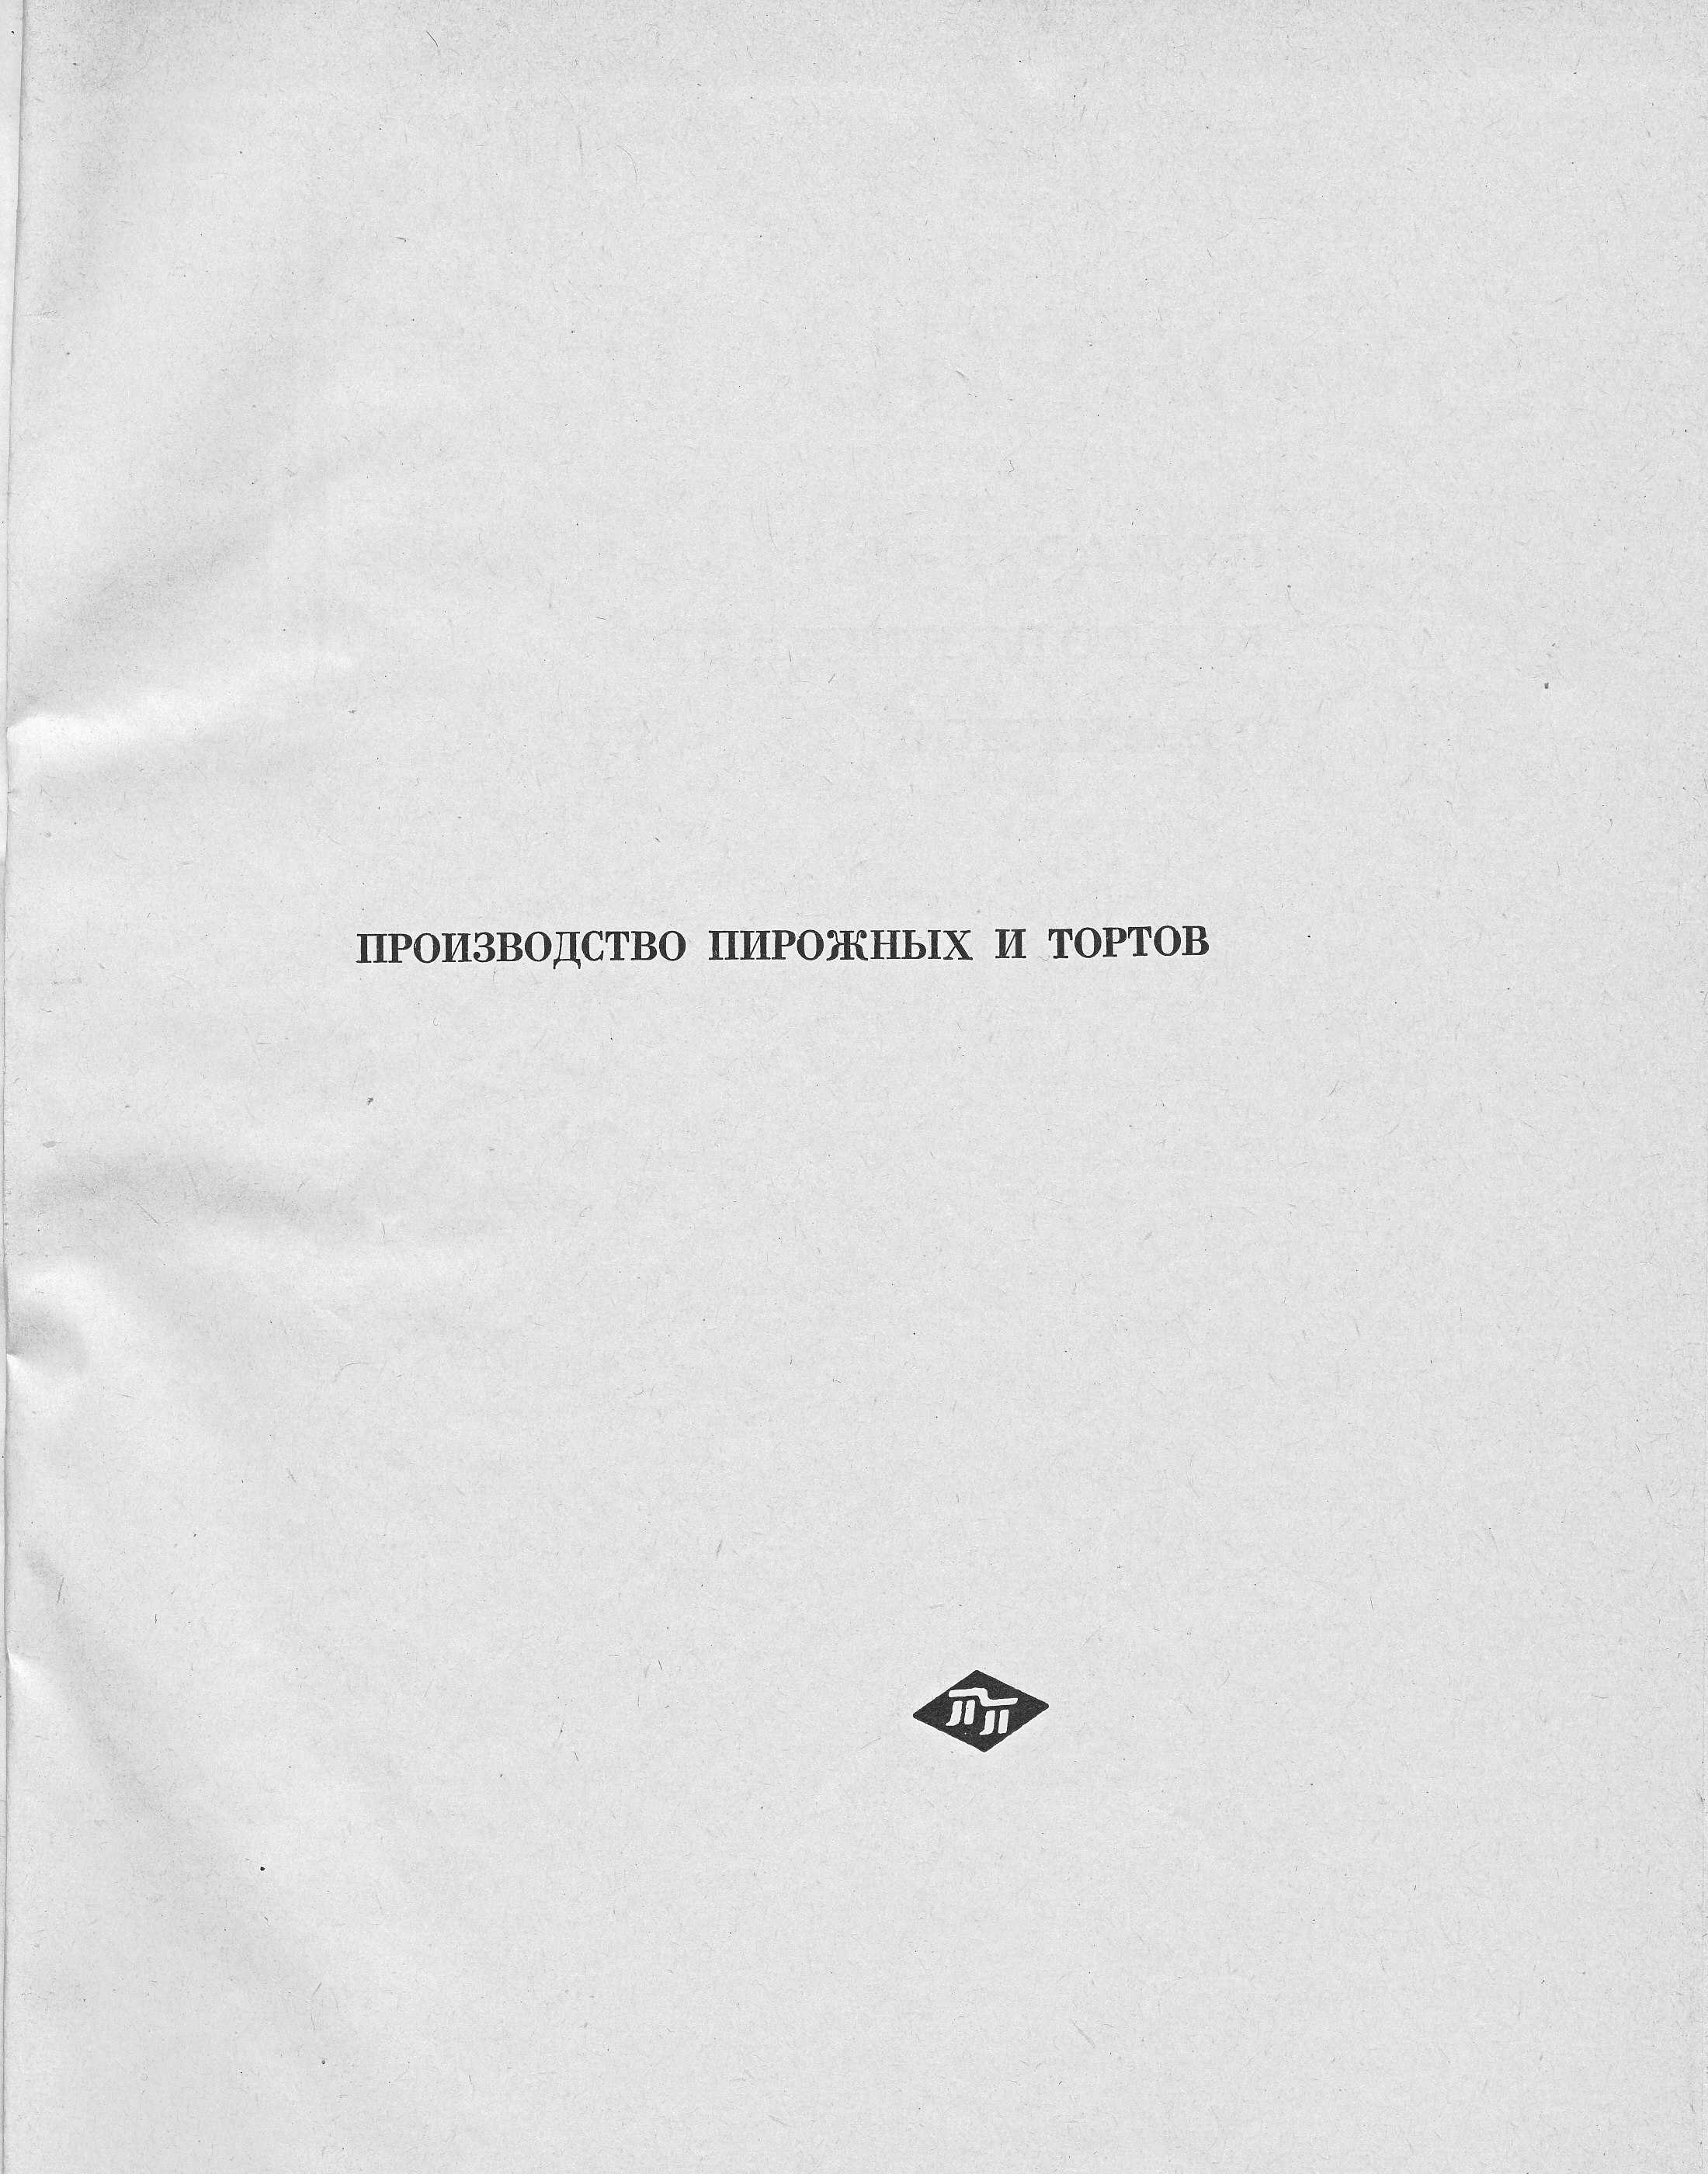 Производство пирожных и тортов П.С. Мархель, Ю.Л. Гопенштейн, С.В. Смелов 1974 г. страница 1